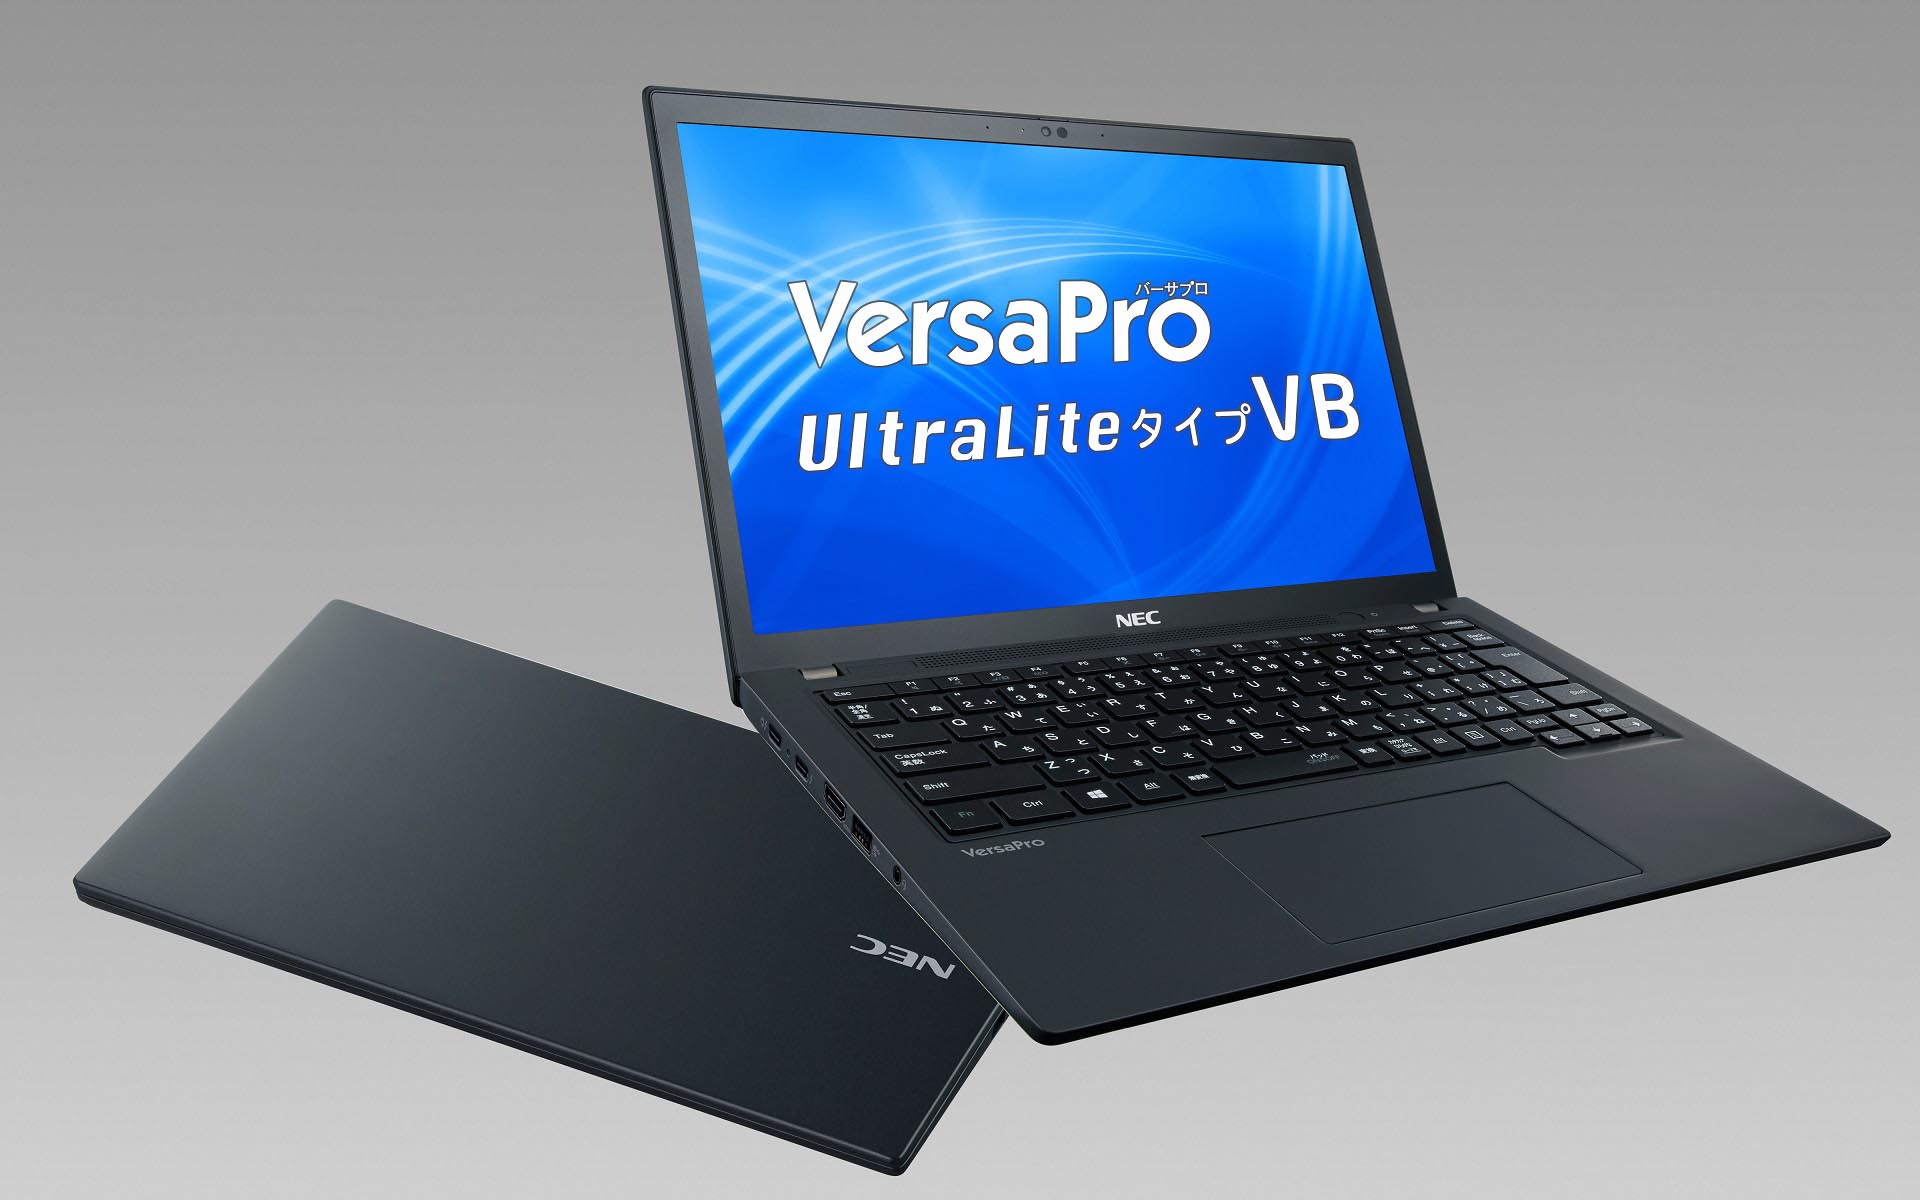 NECがビジネスノートPCの新製品を発表 16：10液晶の13.3型モバイルノート「VersaPro UltraLite タイプVB」など4